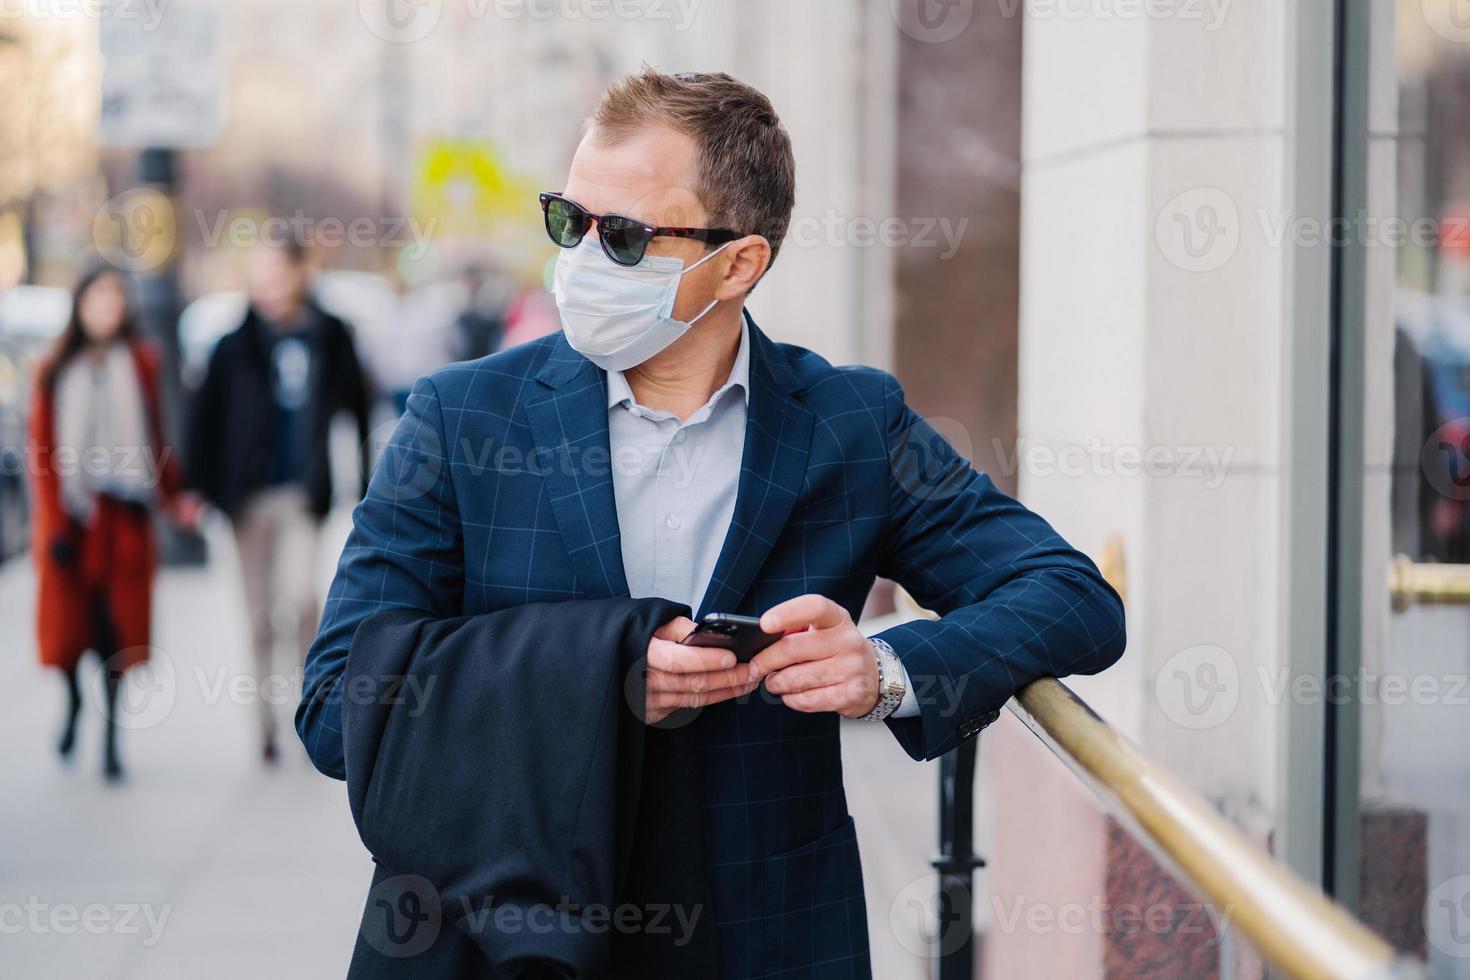 wohlhabender geschäftsmann in formeller kleidung posiert auf der straße, wartet auf jemanden, hält handy und sendet textnachrichten, trägt während des ausbruchs des coronavirus eine medizinische maske, wenige leute gehen draußen foto